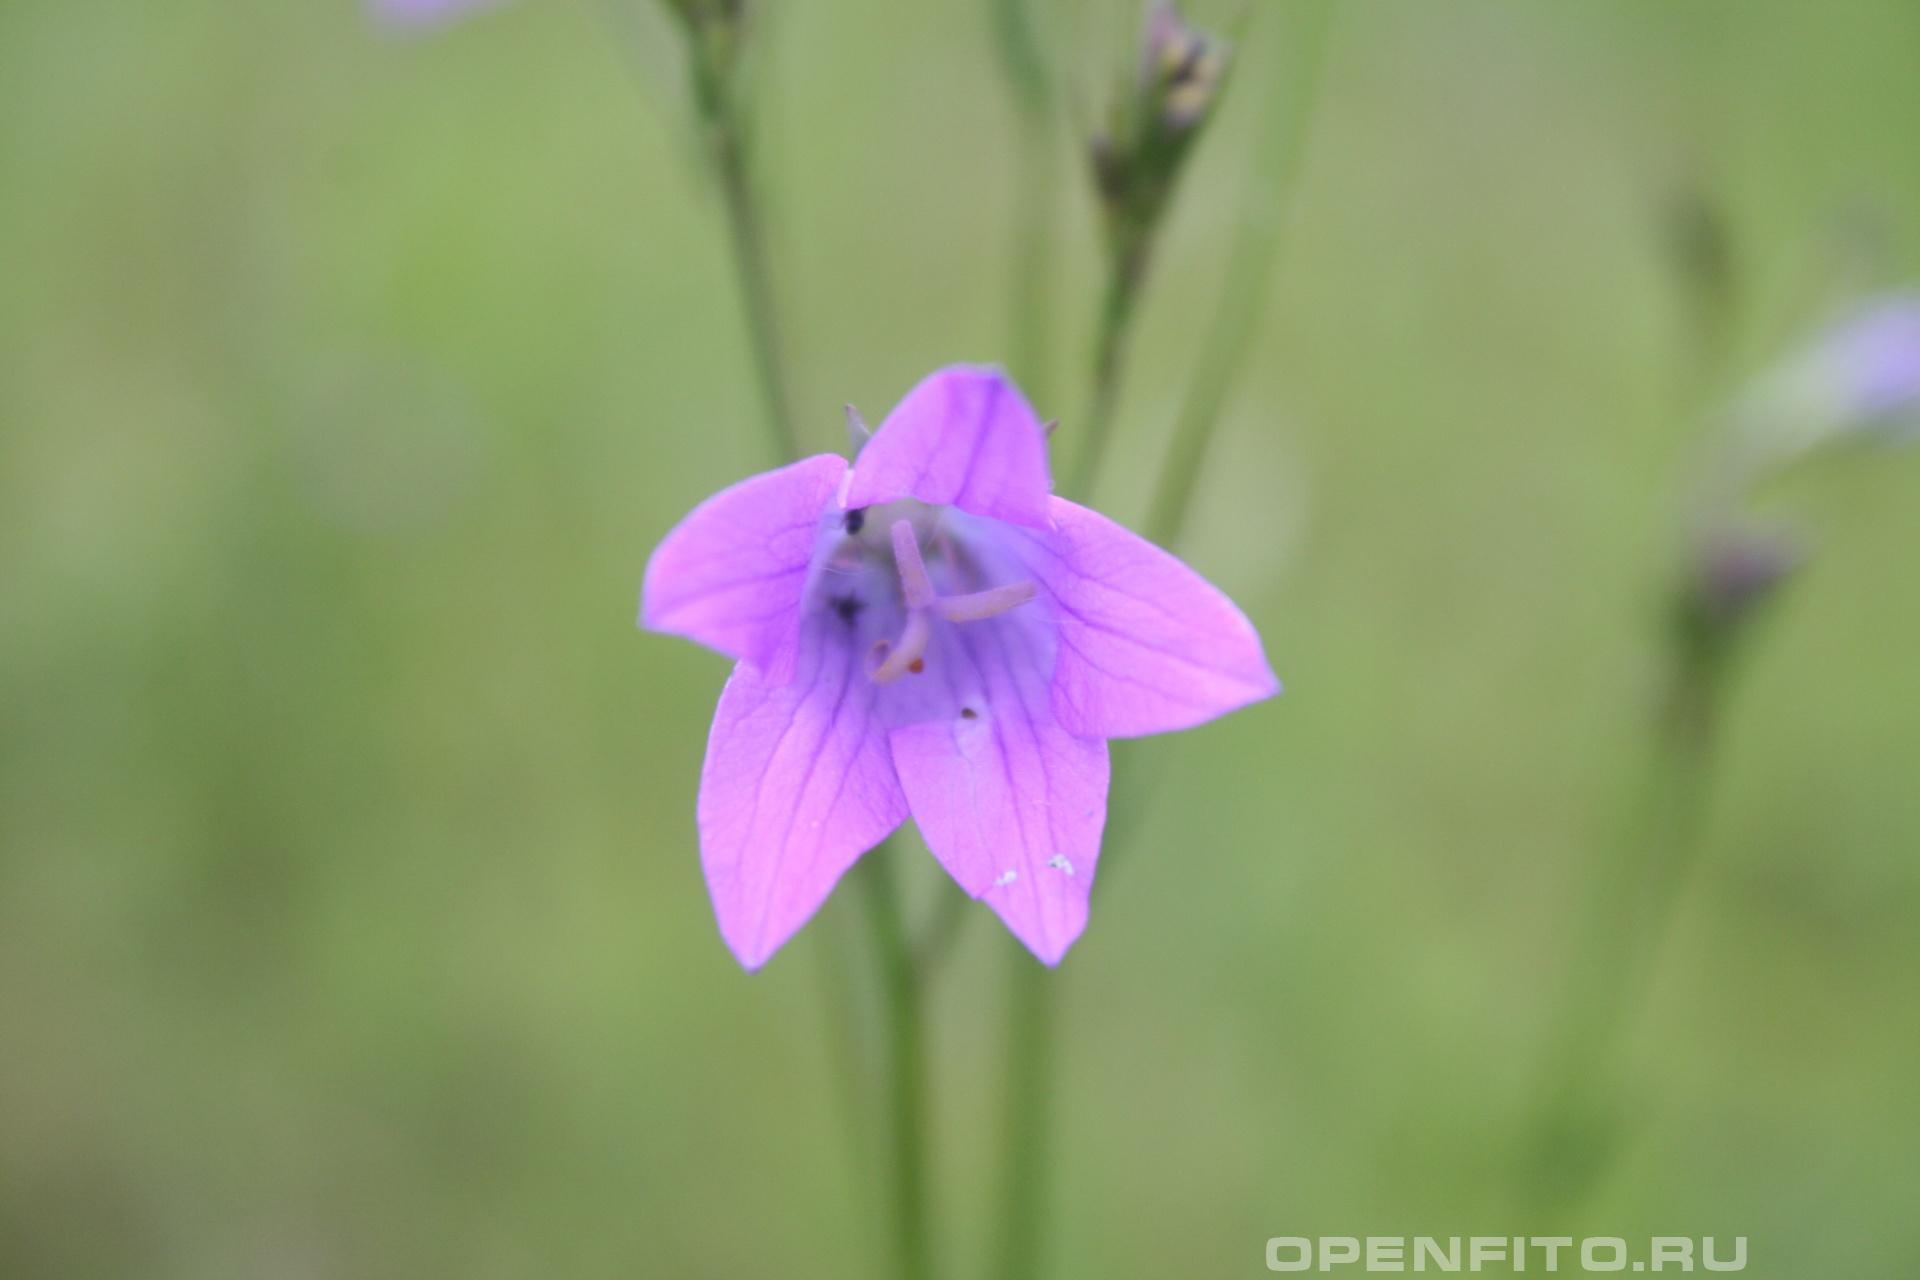 Колокольчик раскидистый - фотография цветка